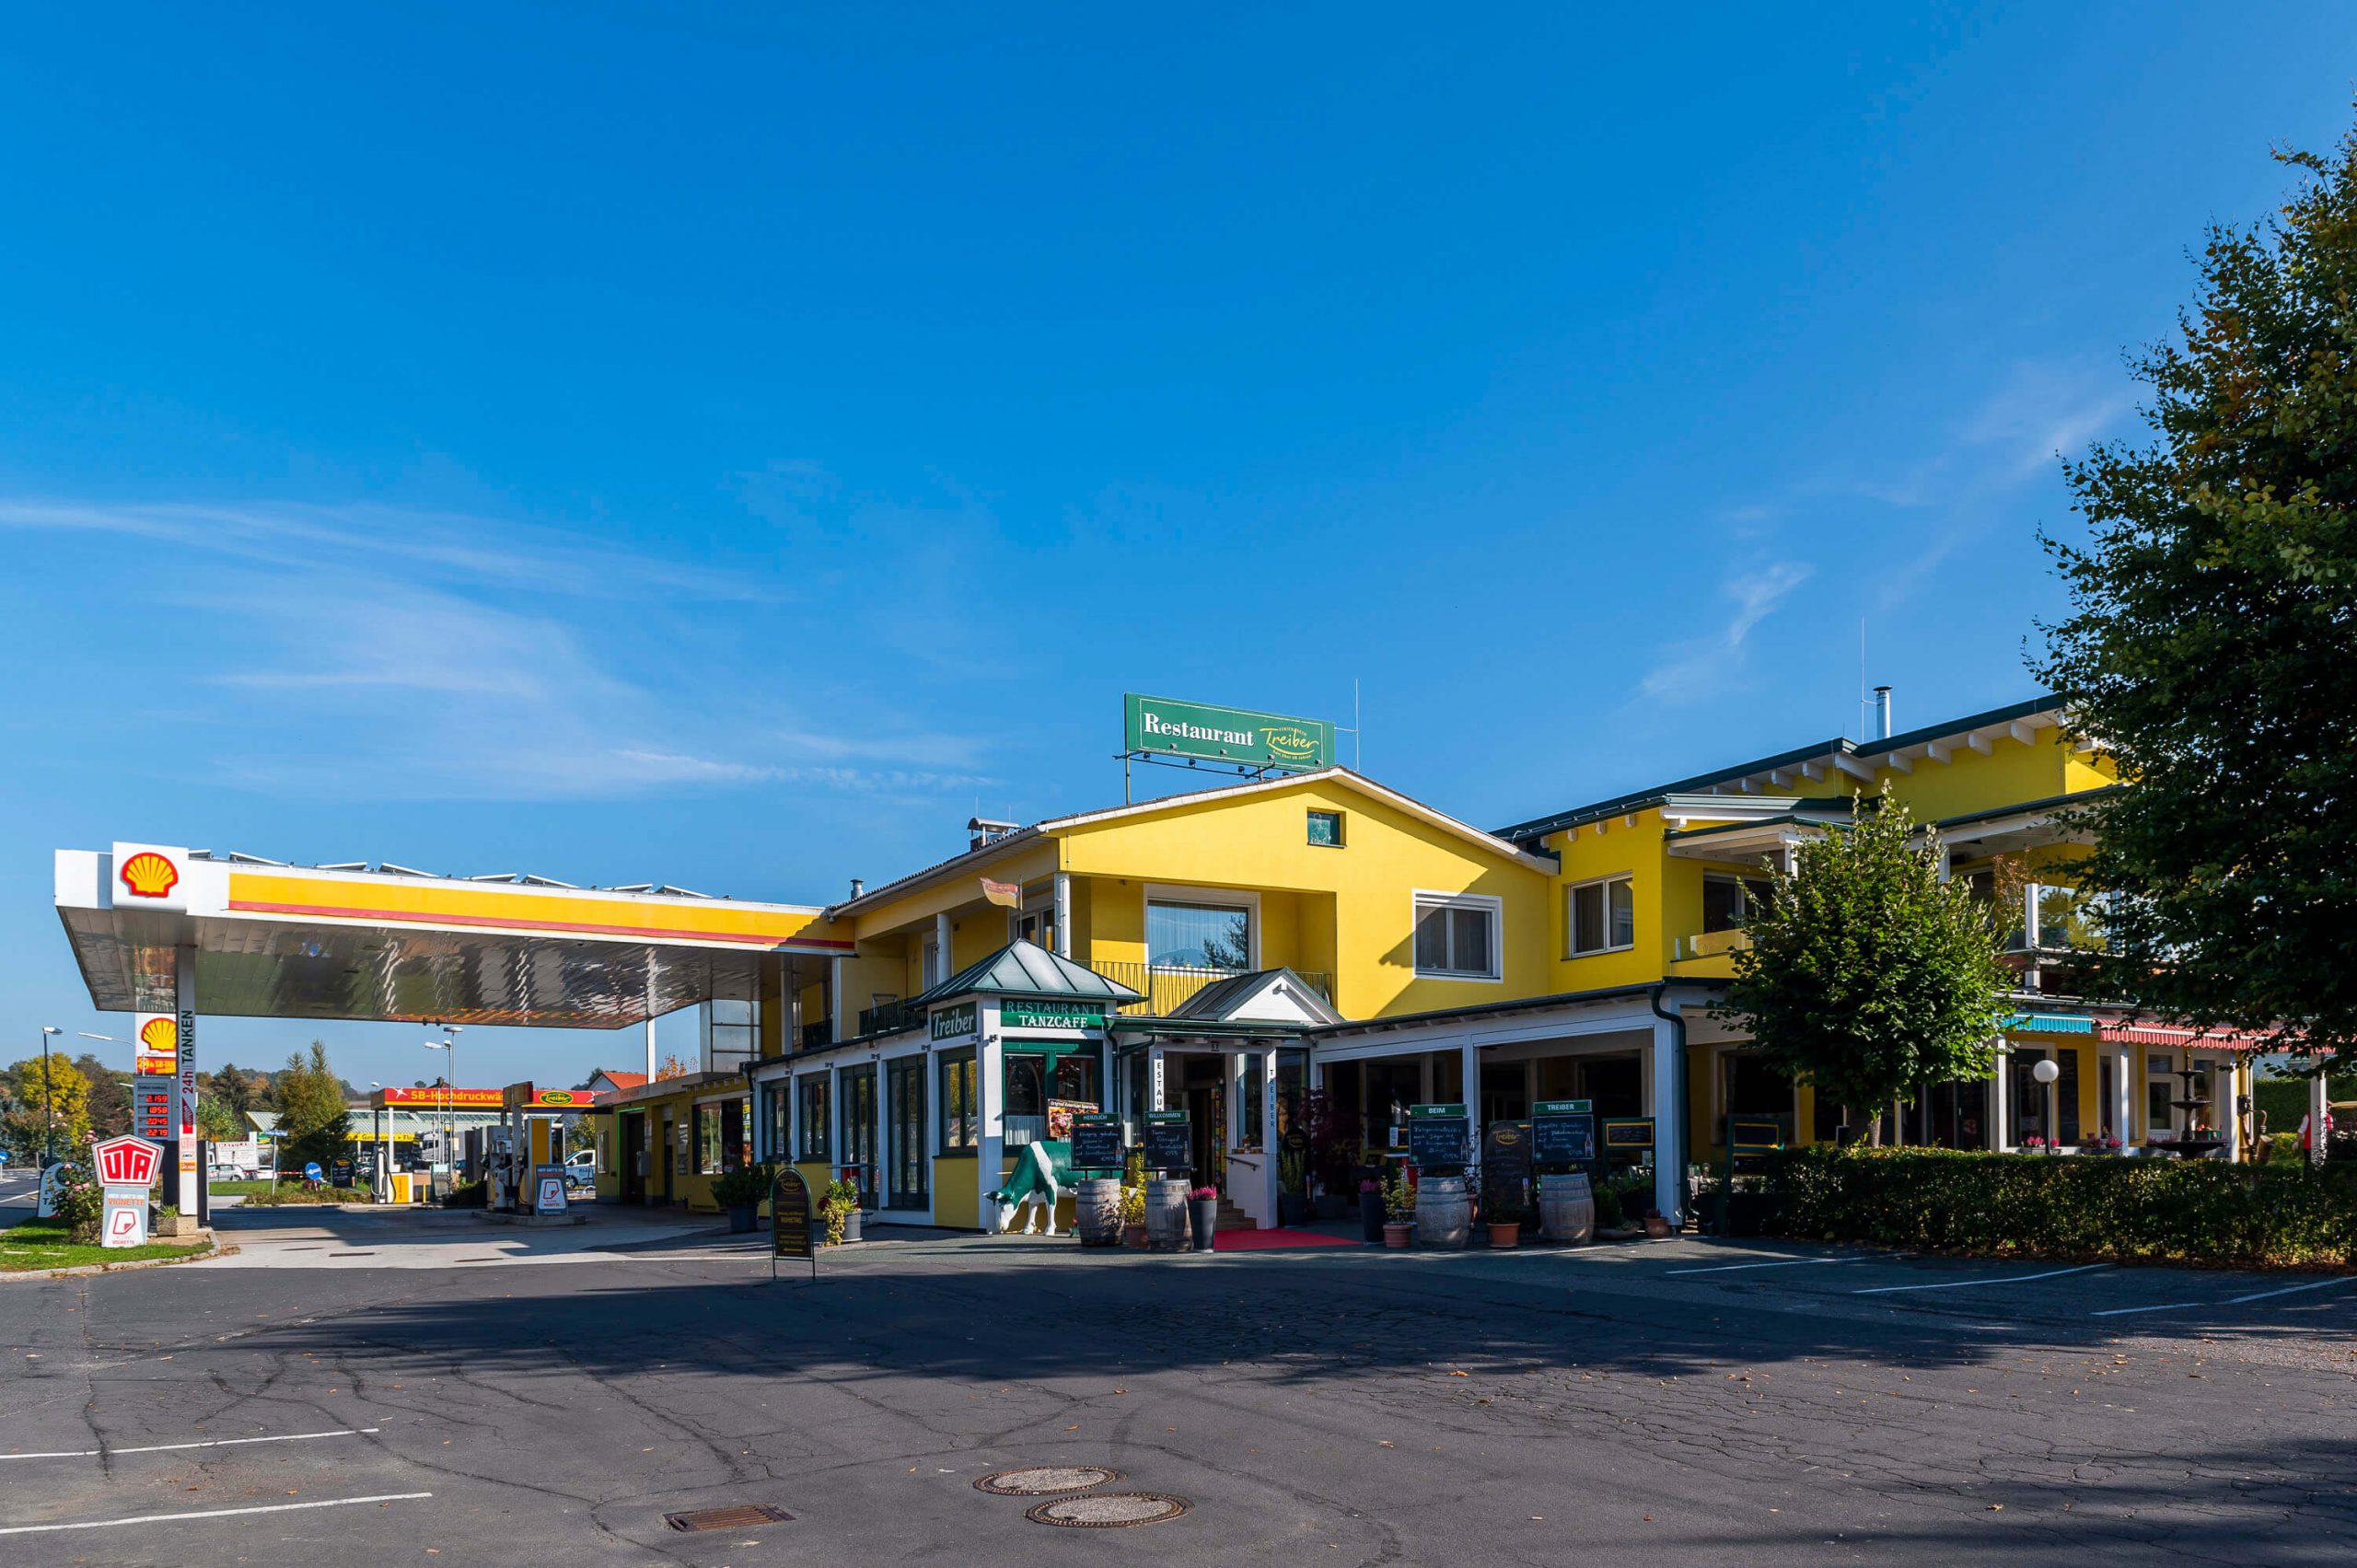 Gelbes Gasthaus mit Restaurant und angegliederter Shell-Tankstelle unter blauem Himmel.